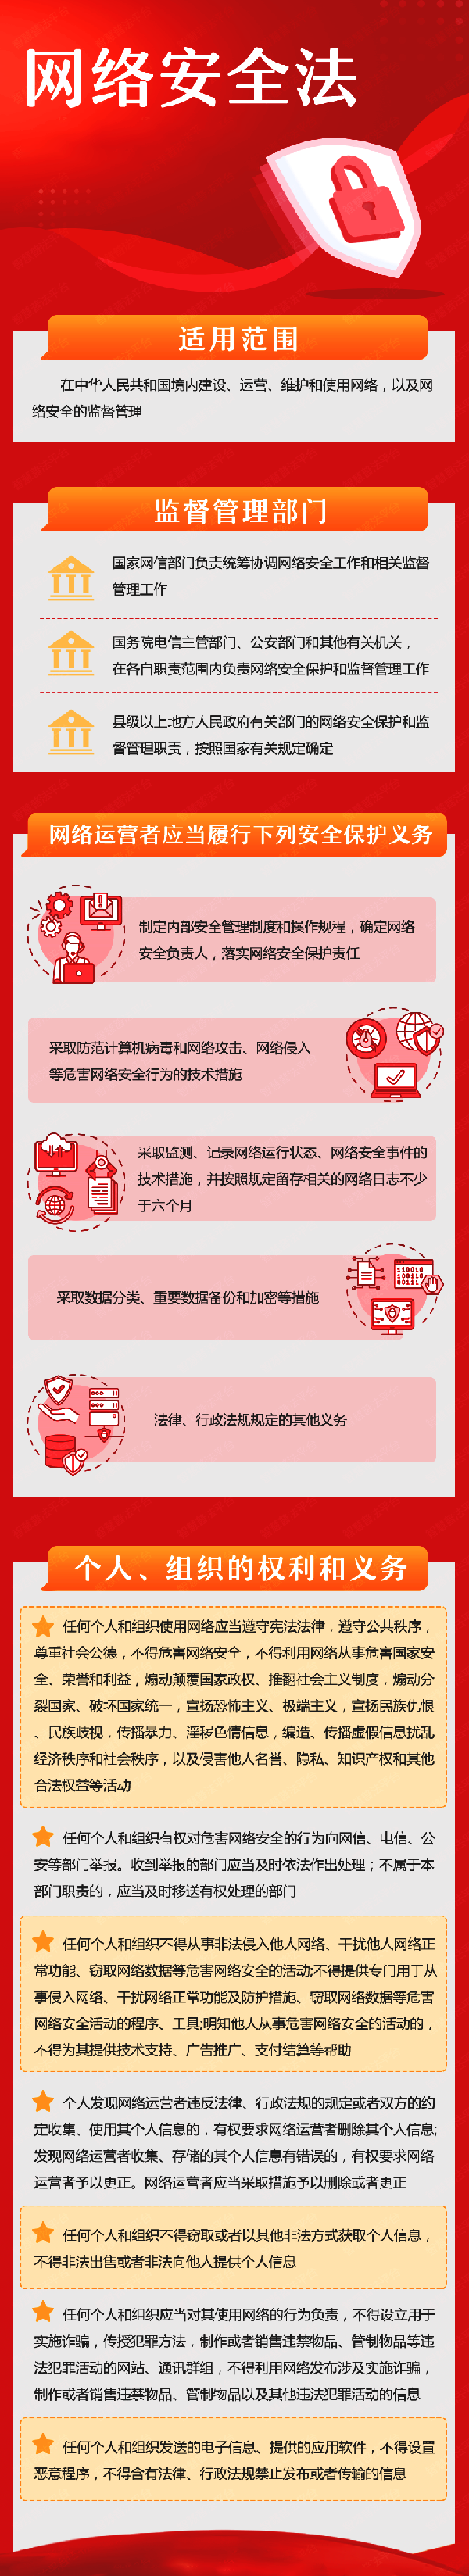 沈阳网站建设公司拥护国家网络安全法